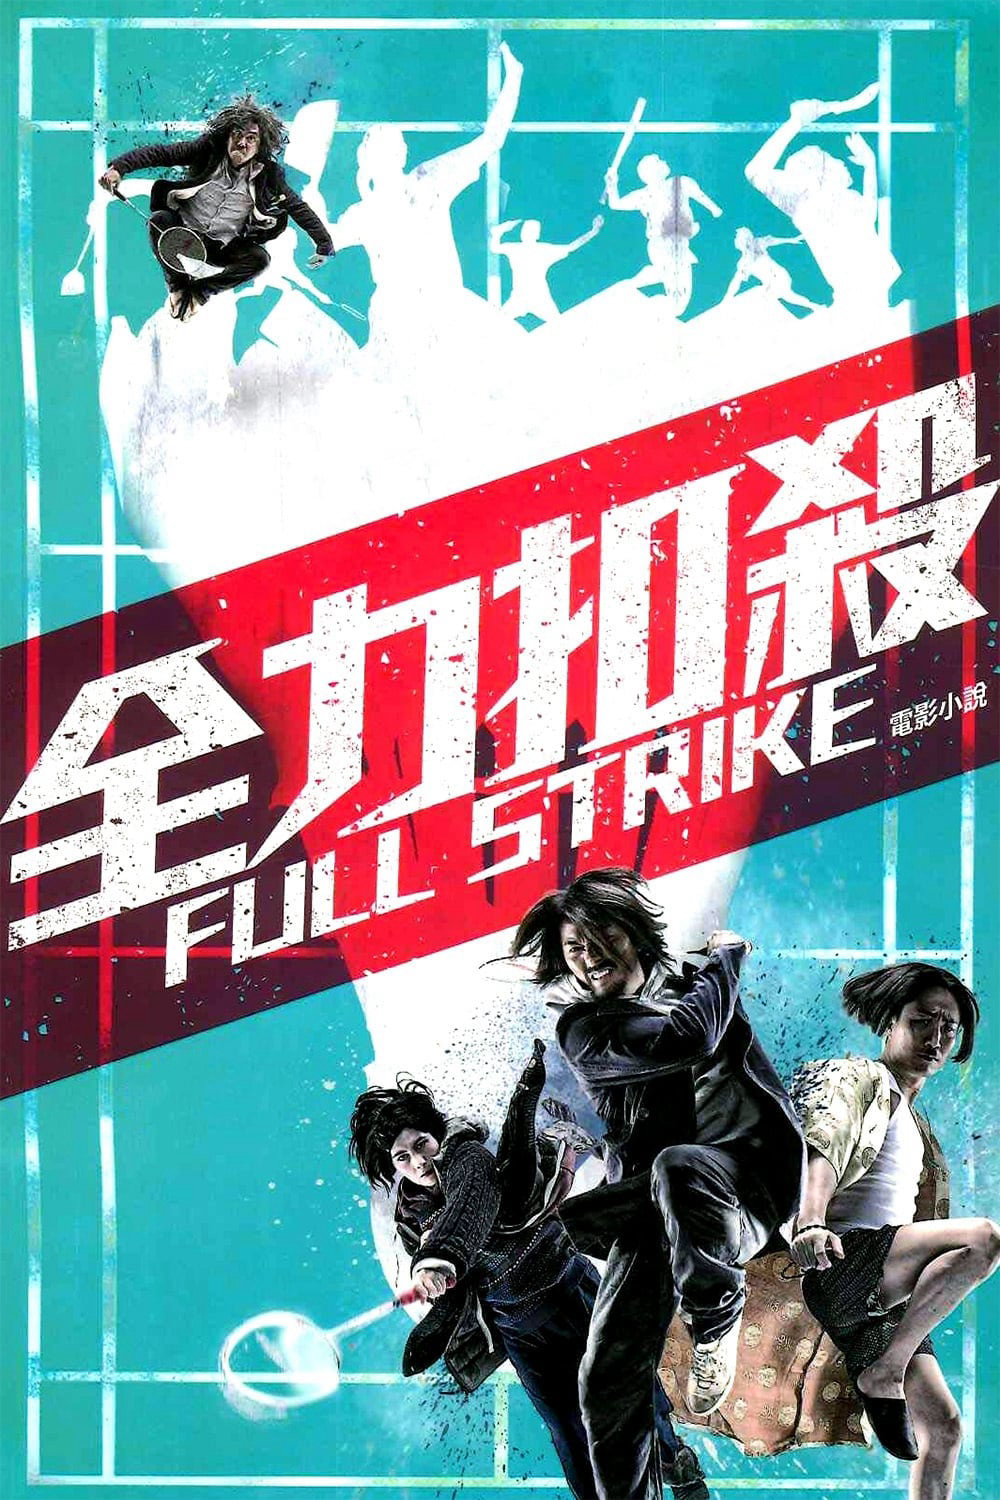 Võ Thuật Cầu Lông (Full Strike) [2015]